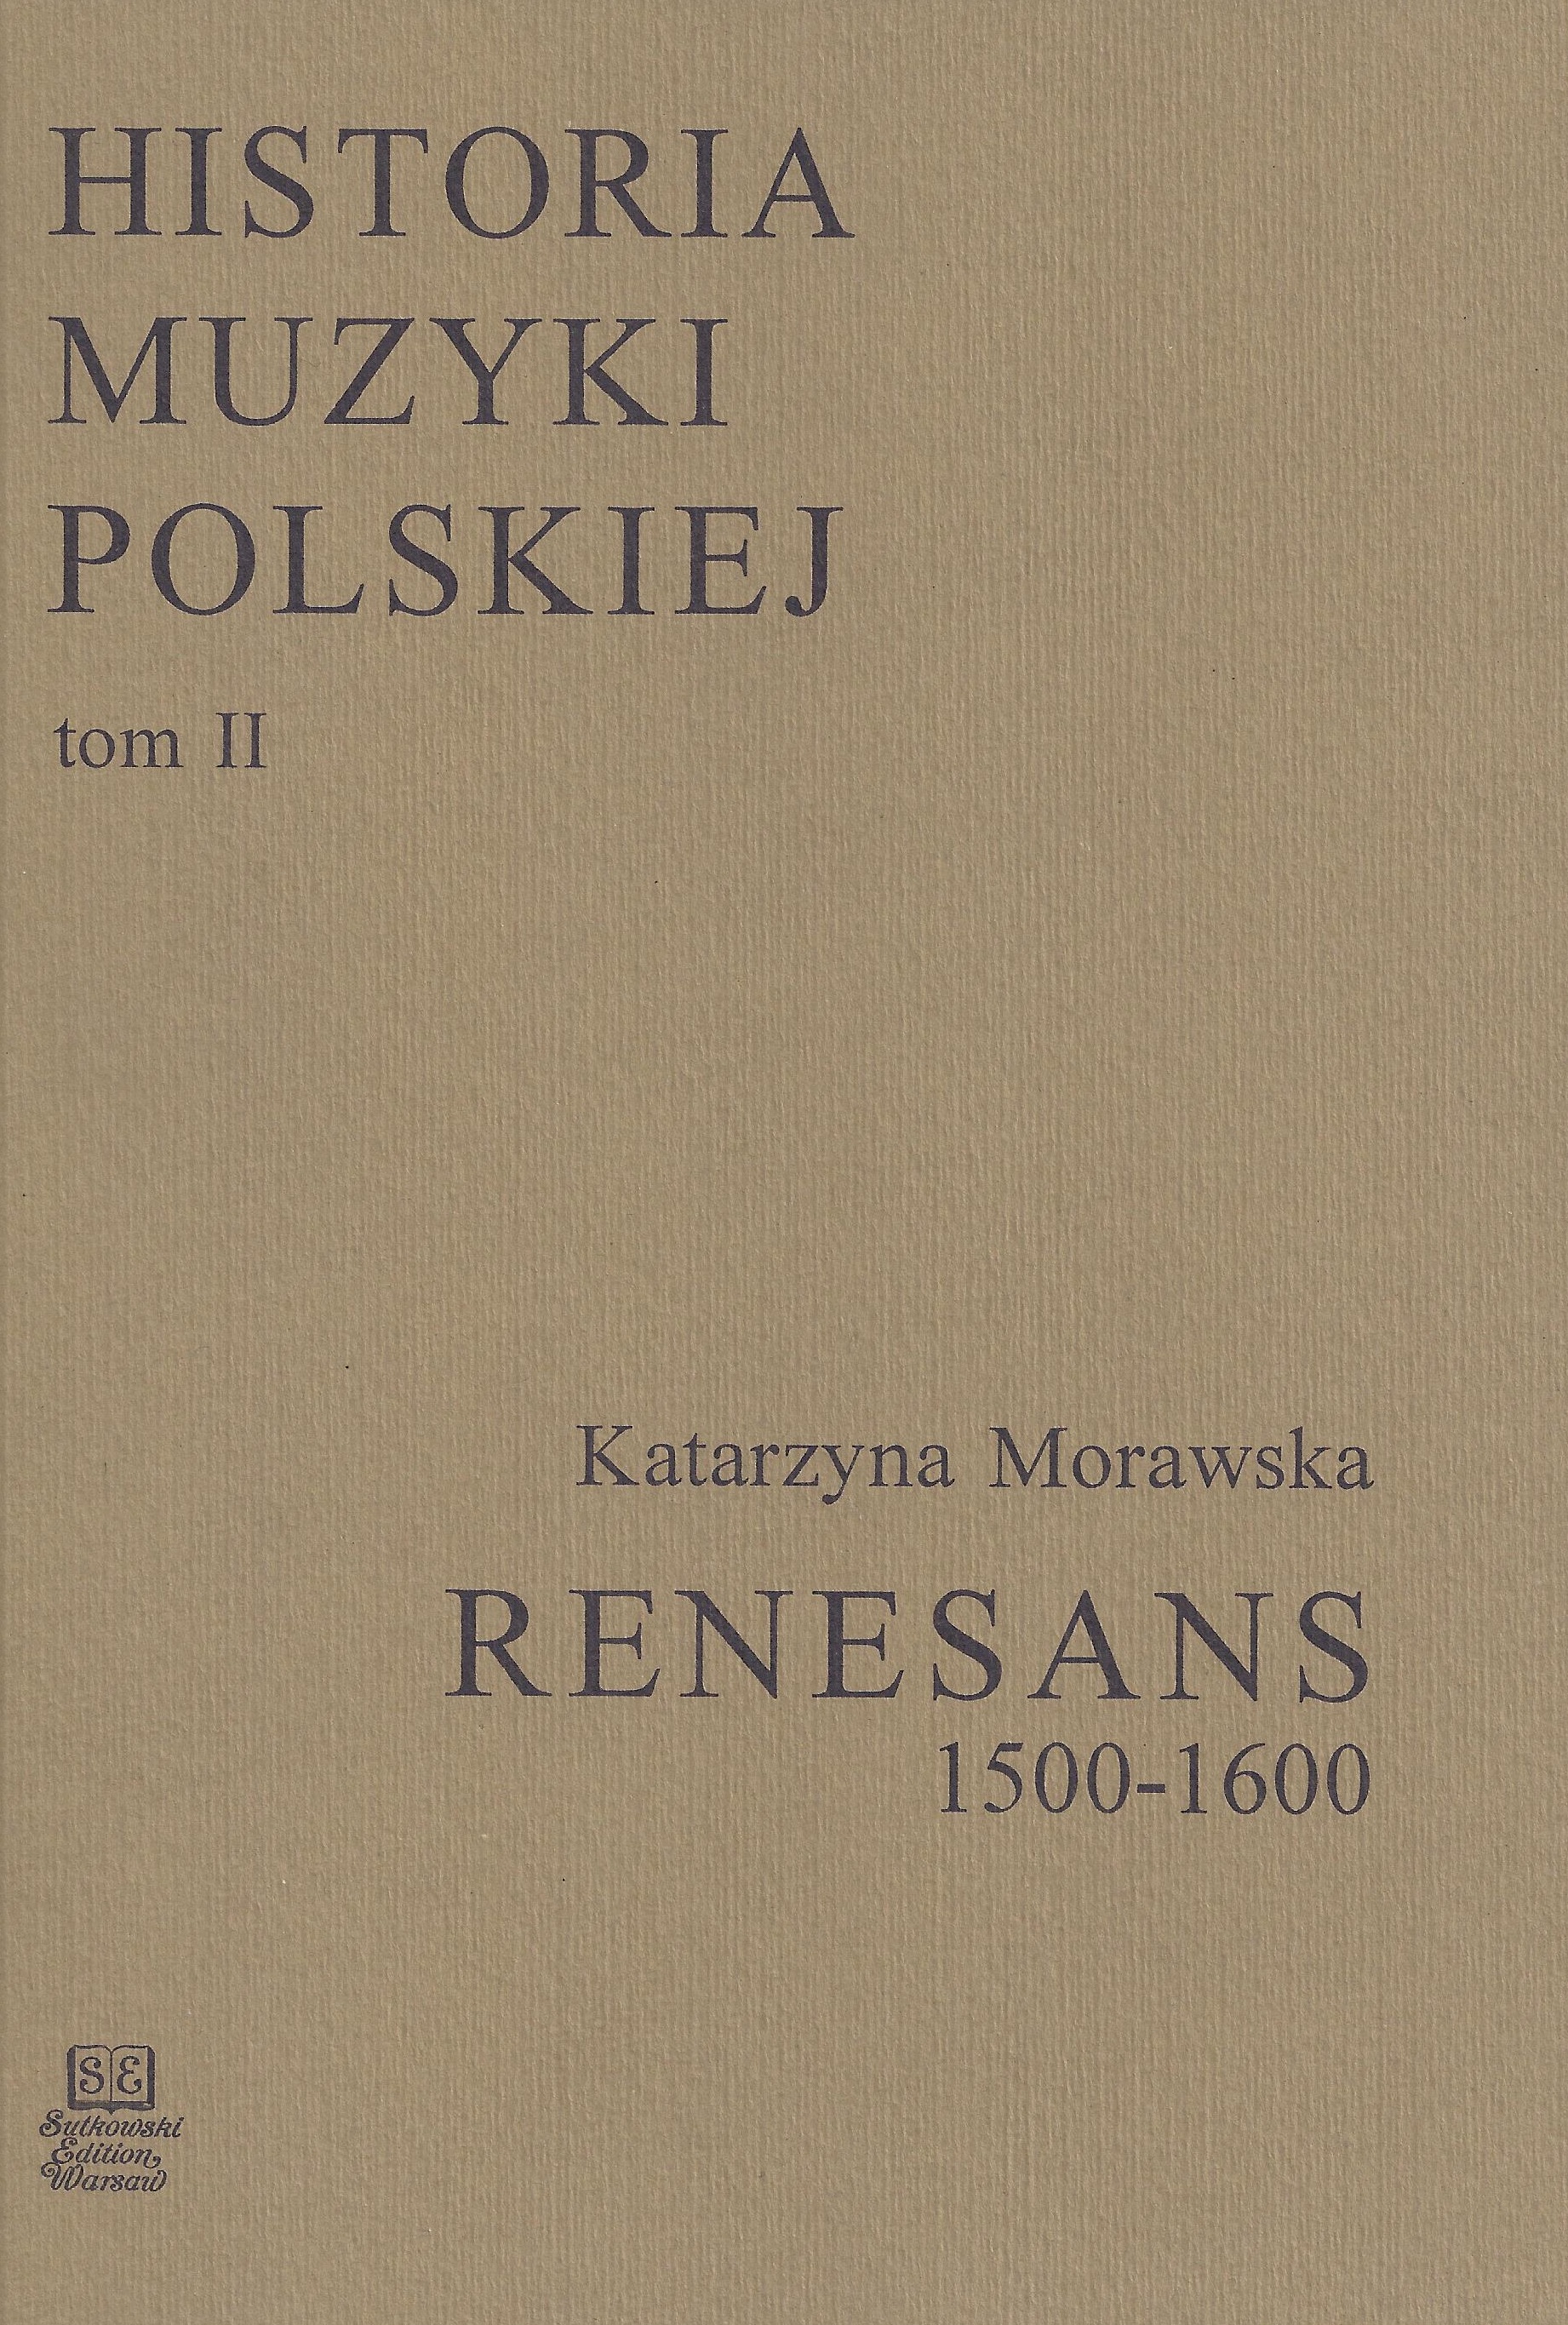 Historia Muzyki Polskiej tom II – Renesans (1500-1600)